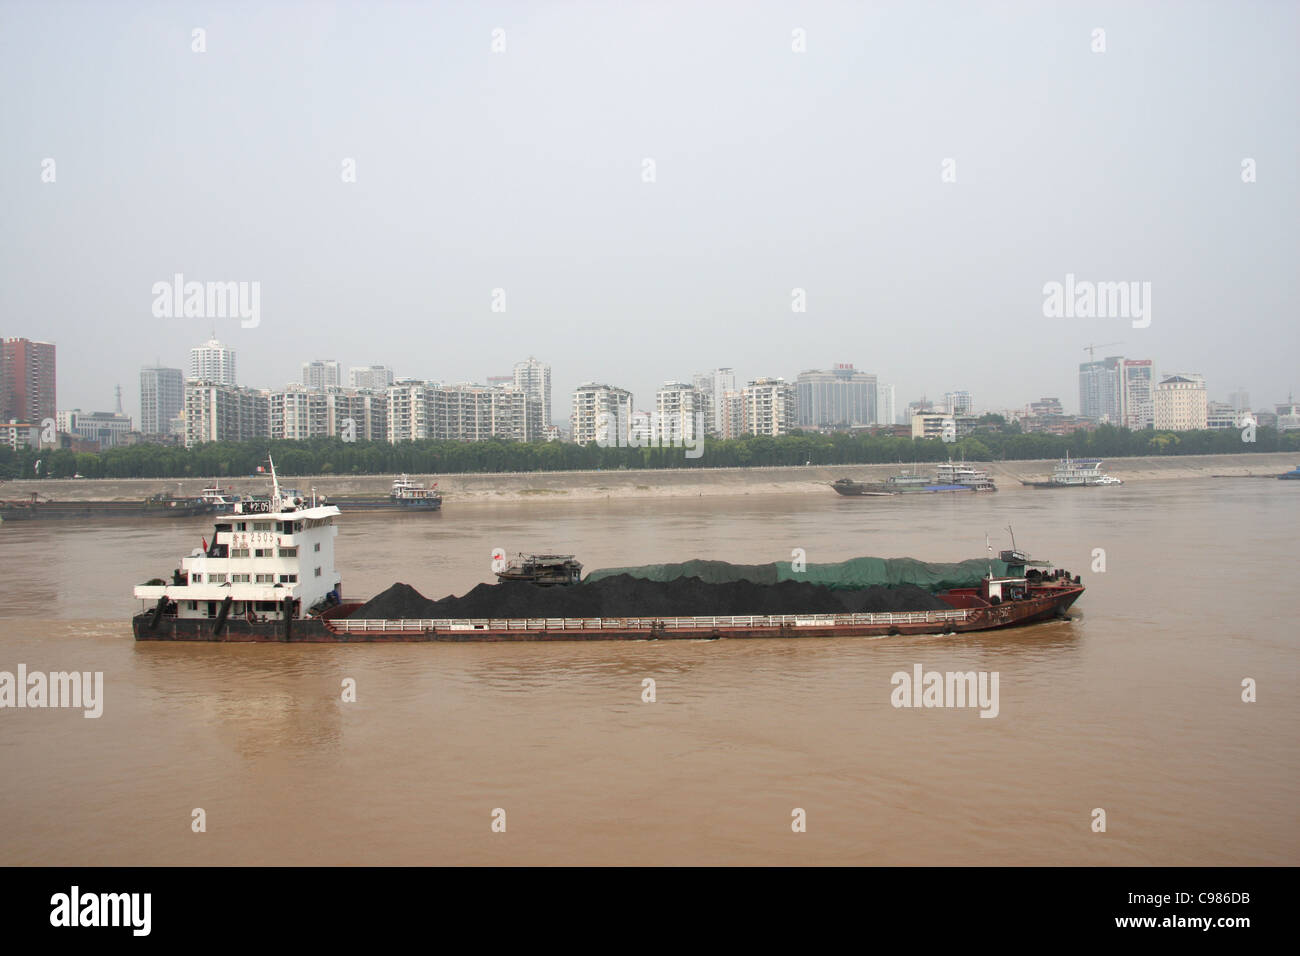 Frachter tragen eine Last von Kohle am Jangtse-Fluss in Yichang Stadt, gerade unterhalb des Gezhouba Staudamm, China Stockfoto